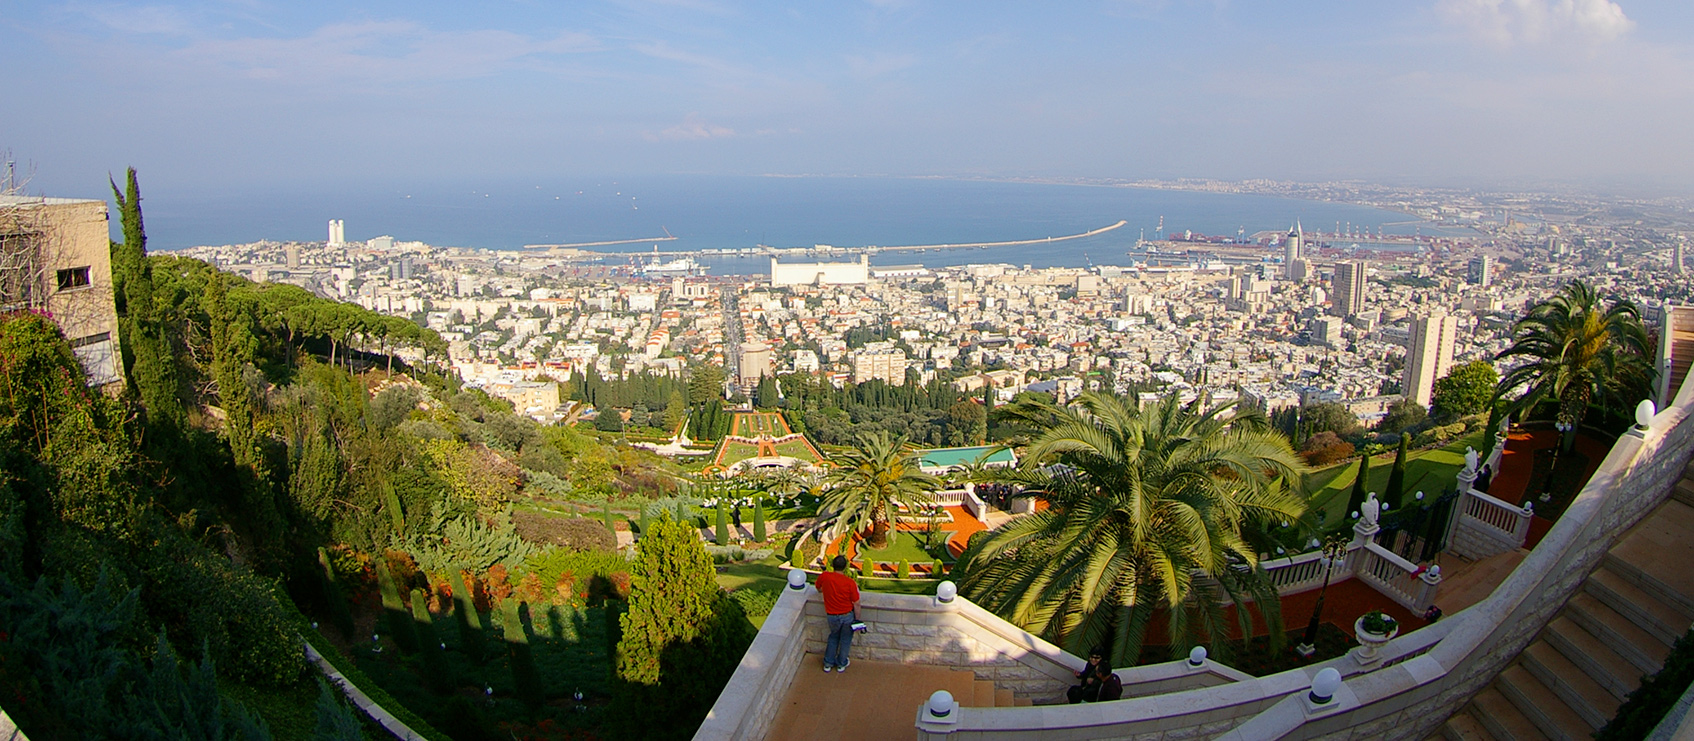 Haifa, Aussicht auf den Hafen mit der prächtigen Gartenanlage des Bahai-Weltzentrums im Vordergrund.